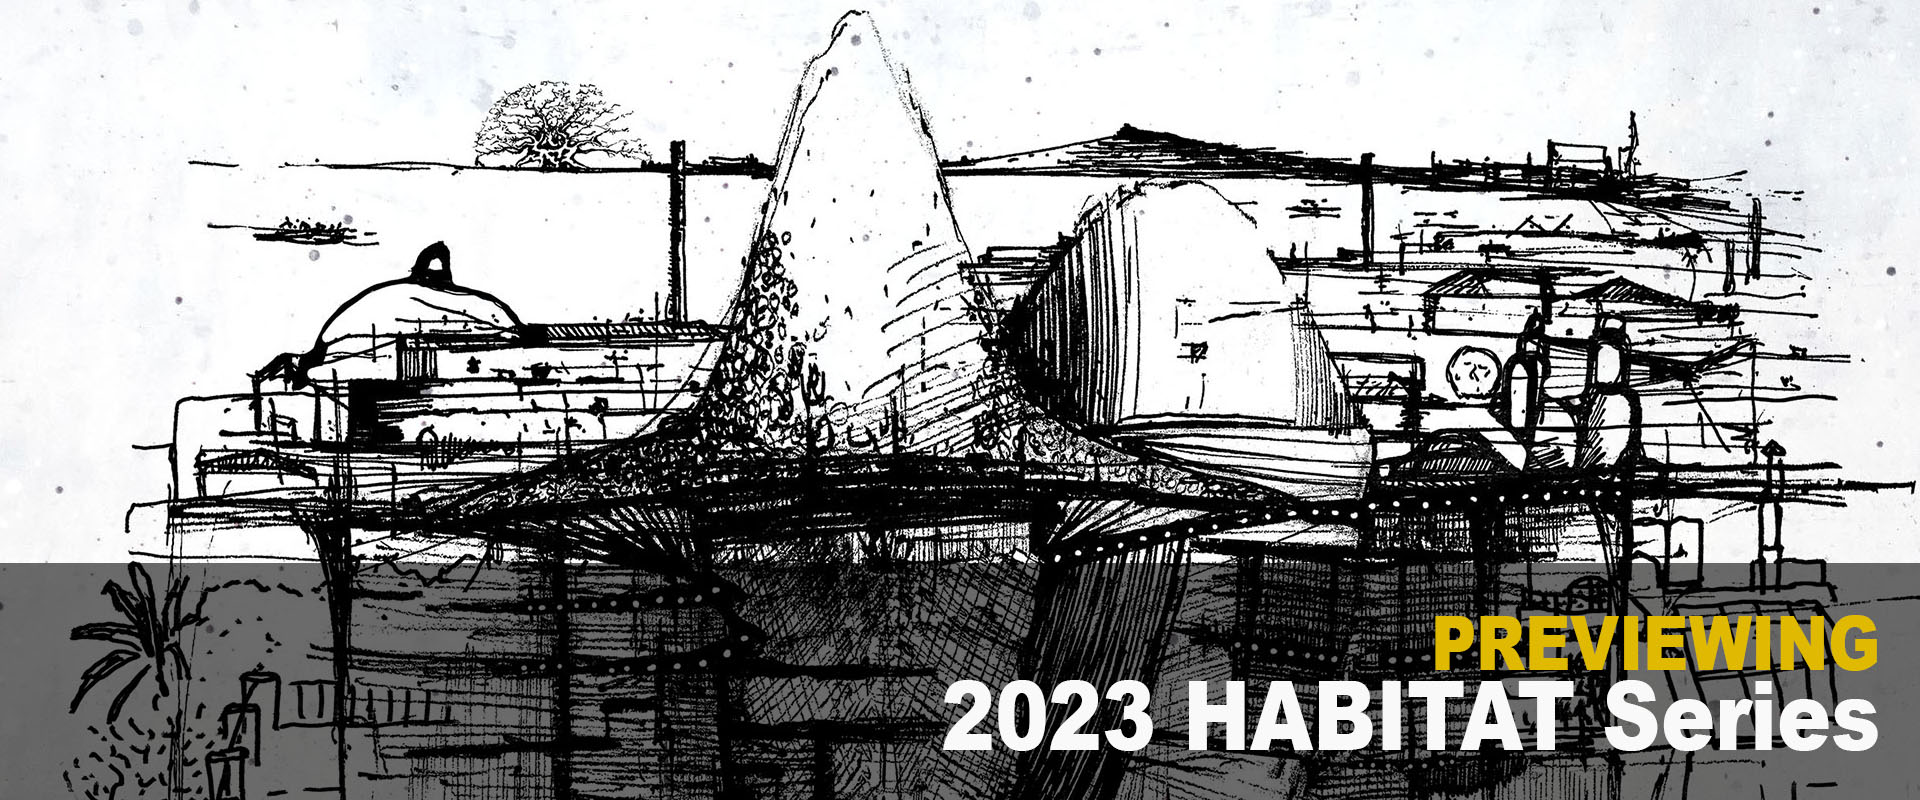 Habitat Series